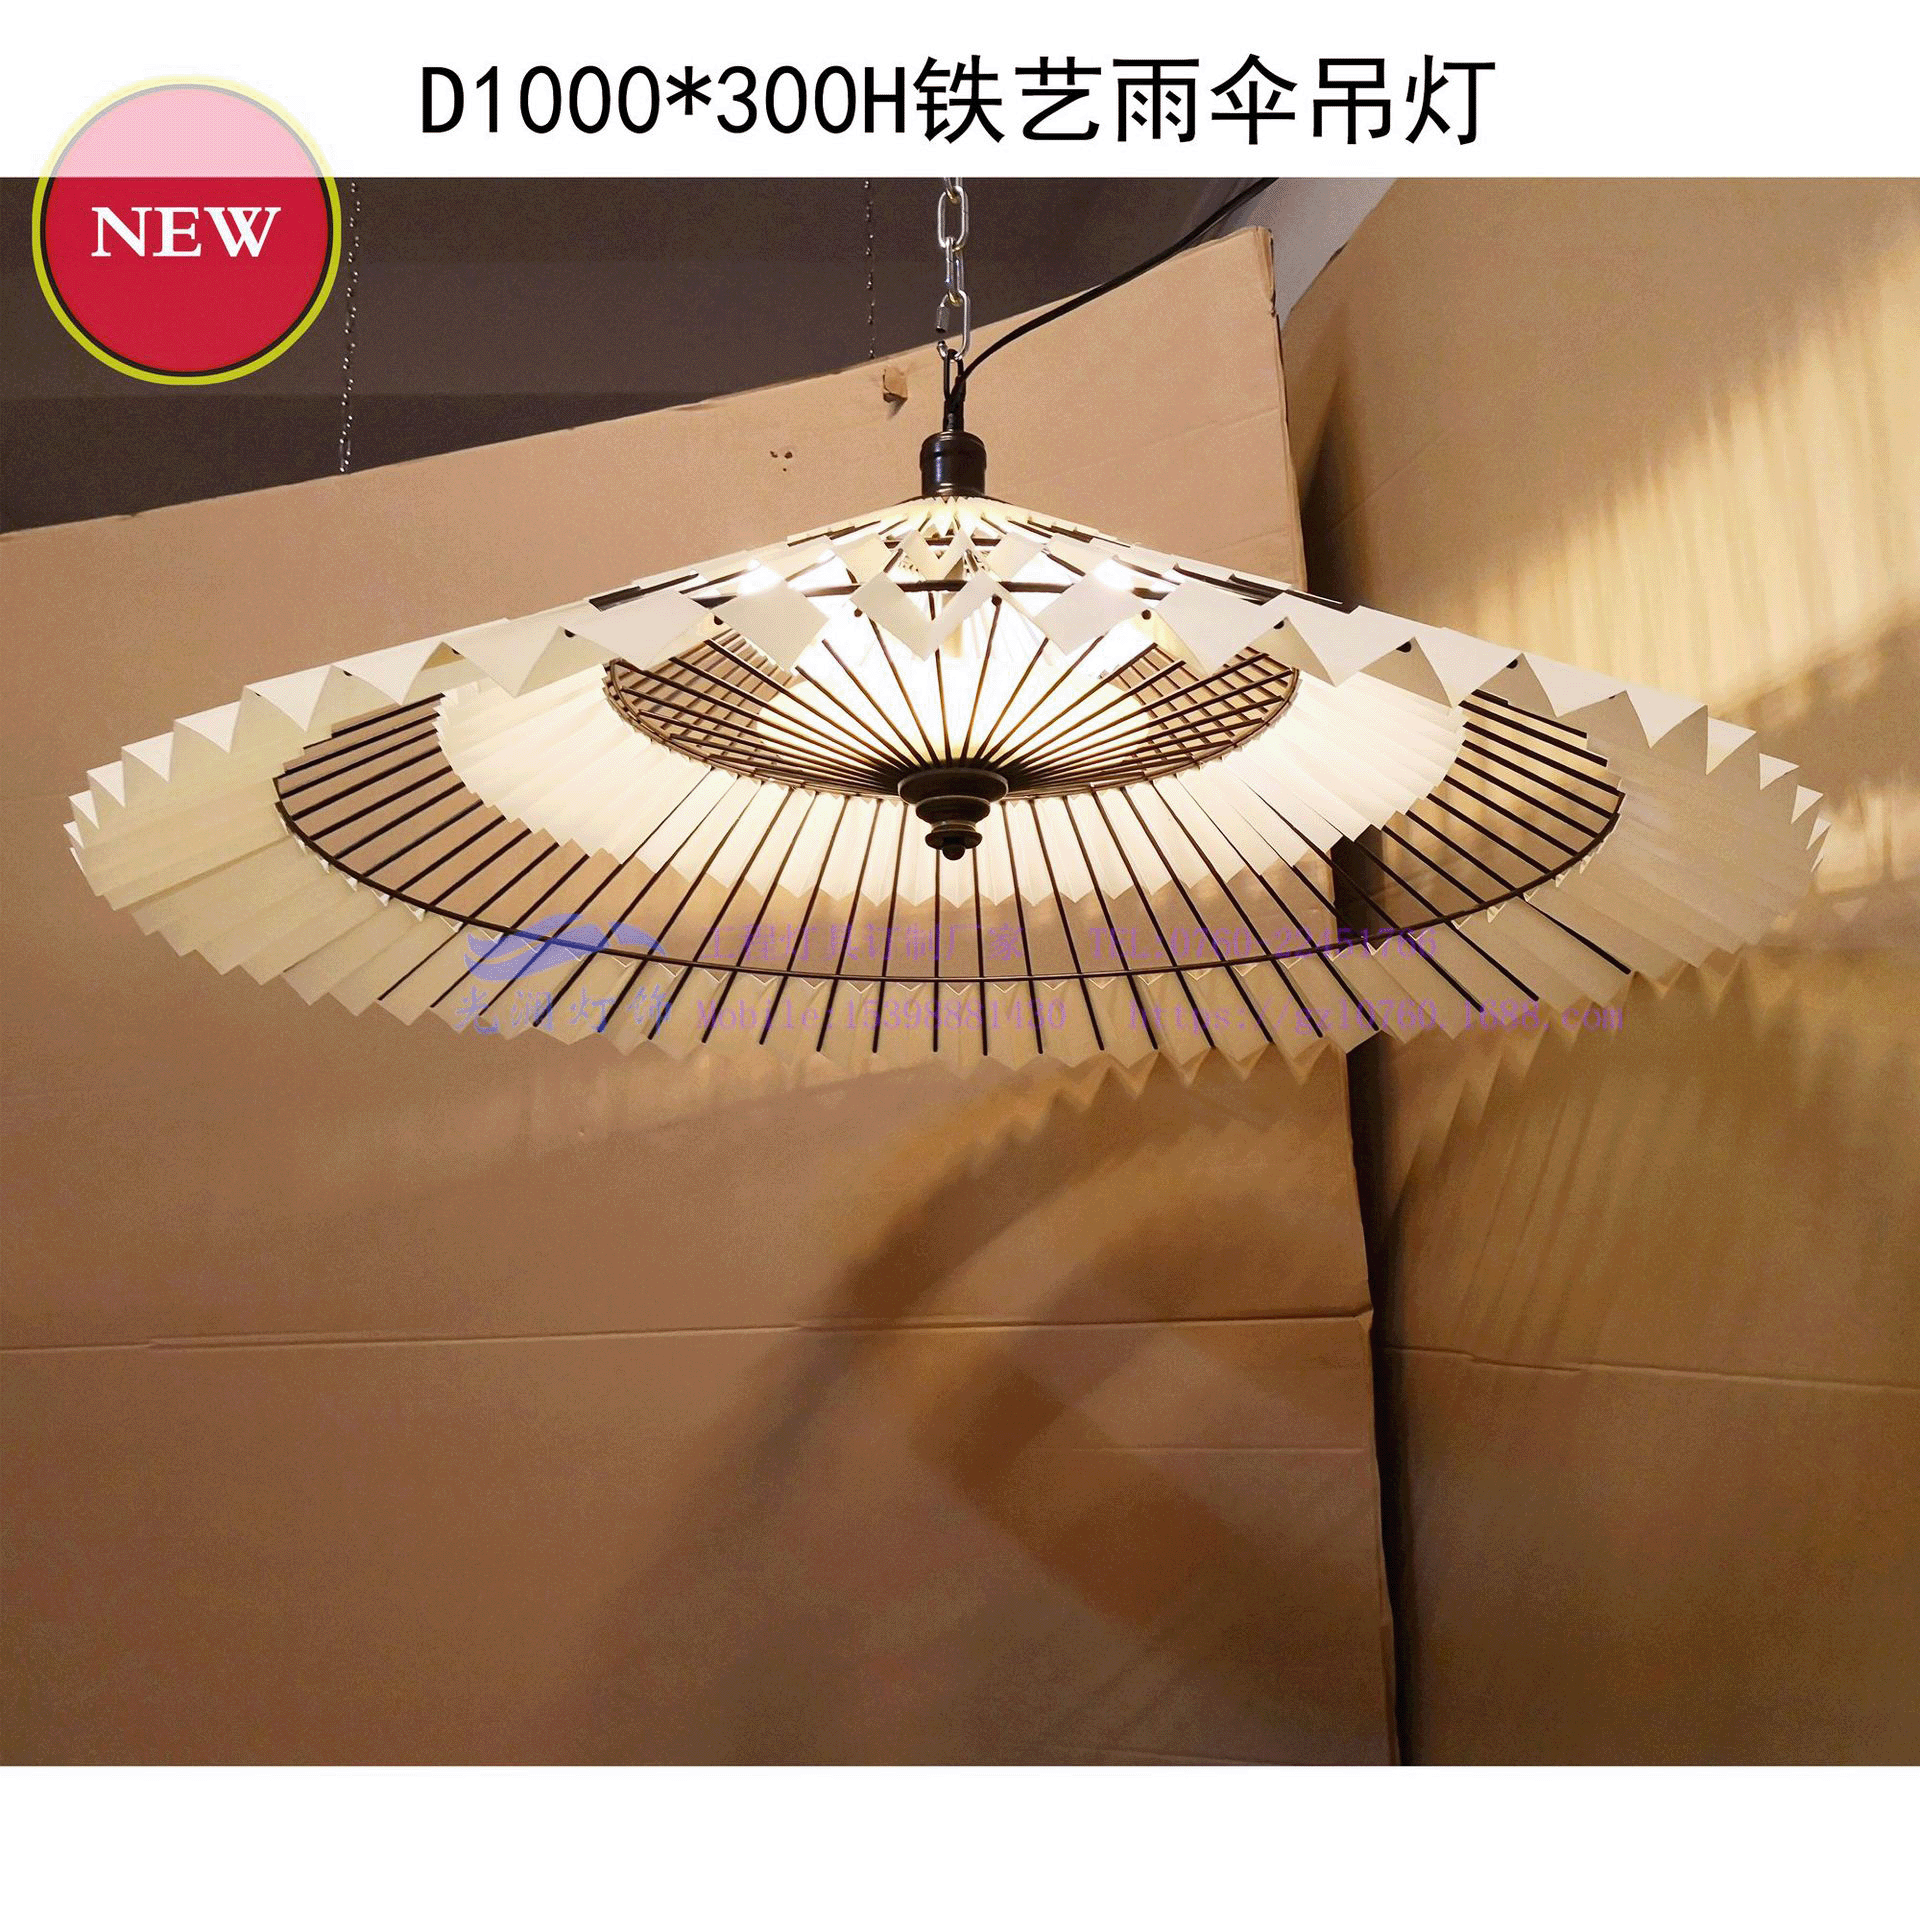 中式复古铁艺中国风雨伞吊灯 餐厅酒楼非标工程订制灯具工厂直销